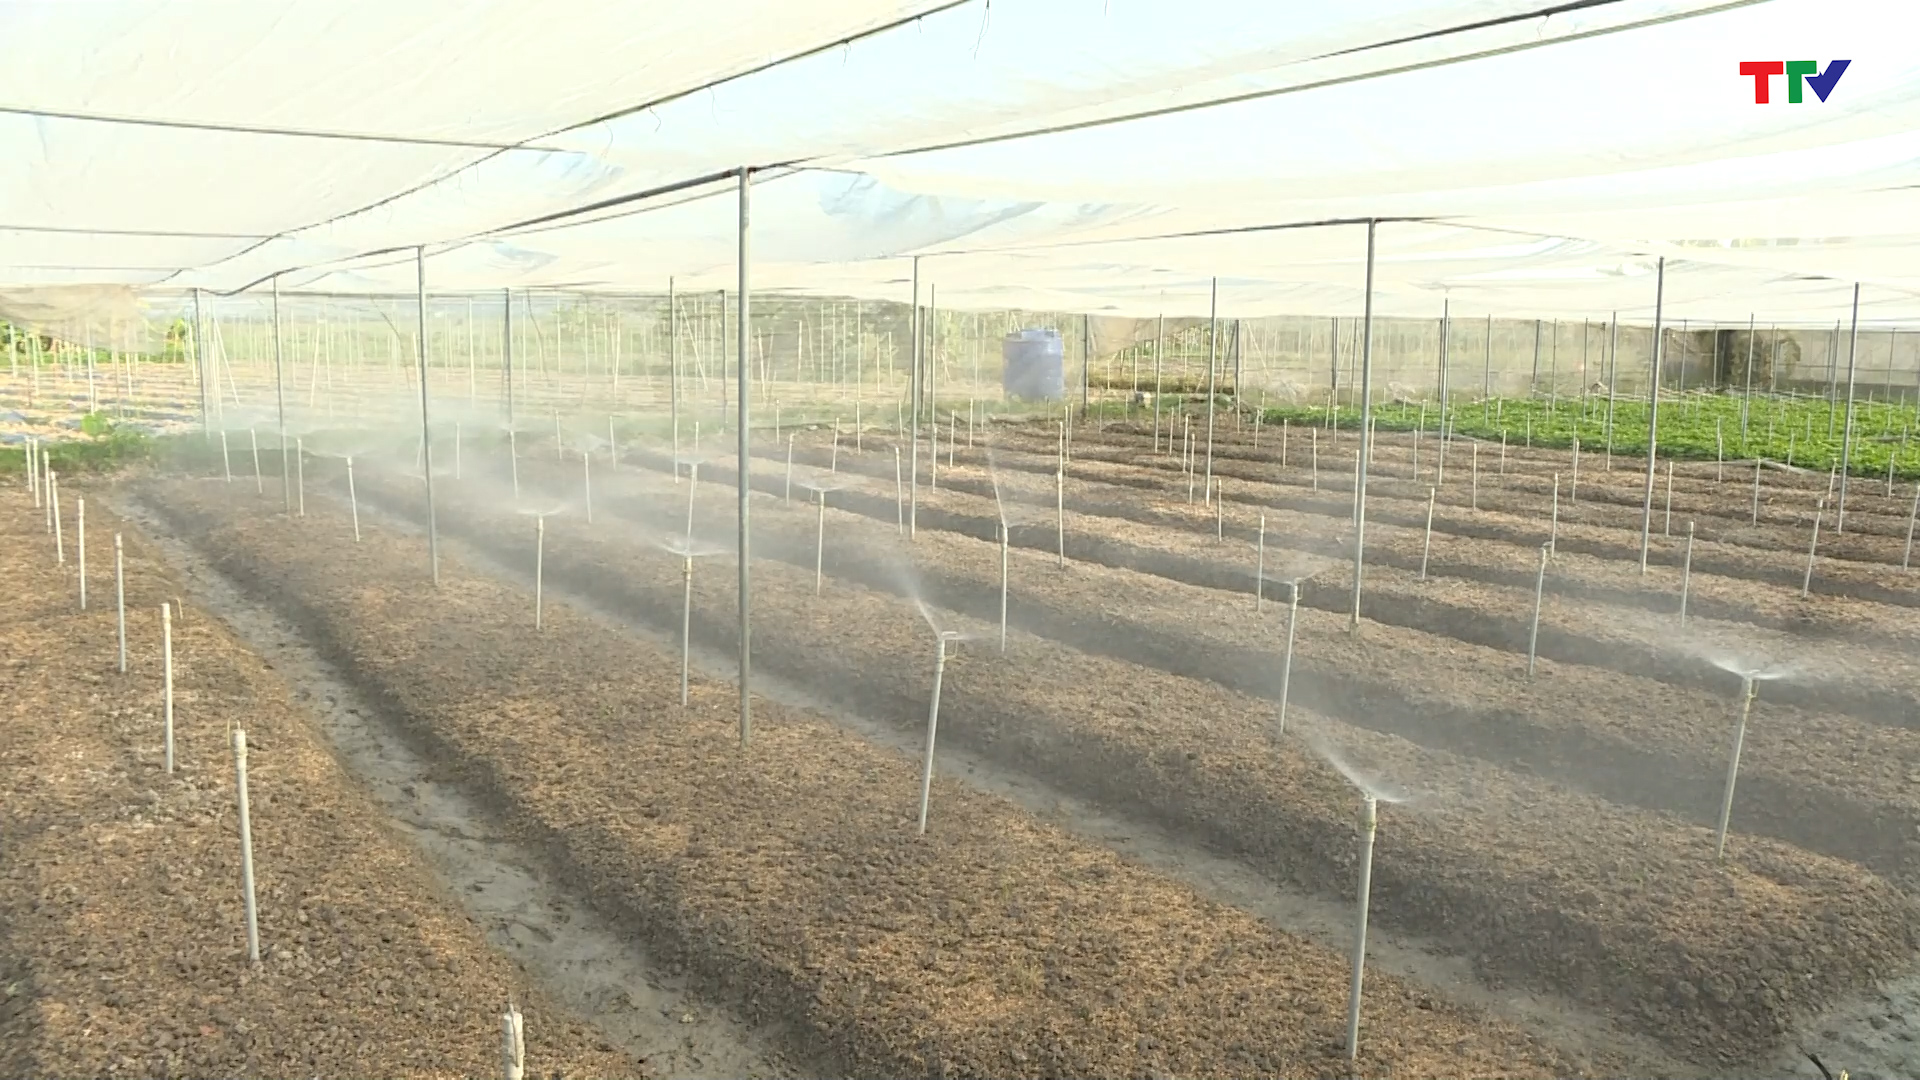 Hiệu quả từ mô hình tưới tiết kiệm phun mưa tận gốc cho cây cà phêVnSAT